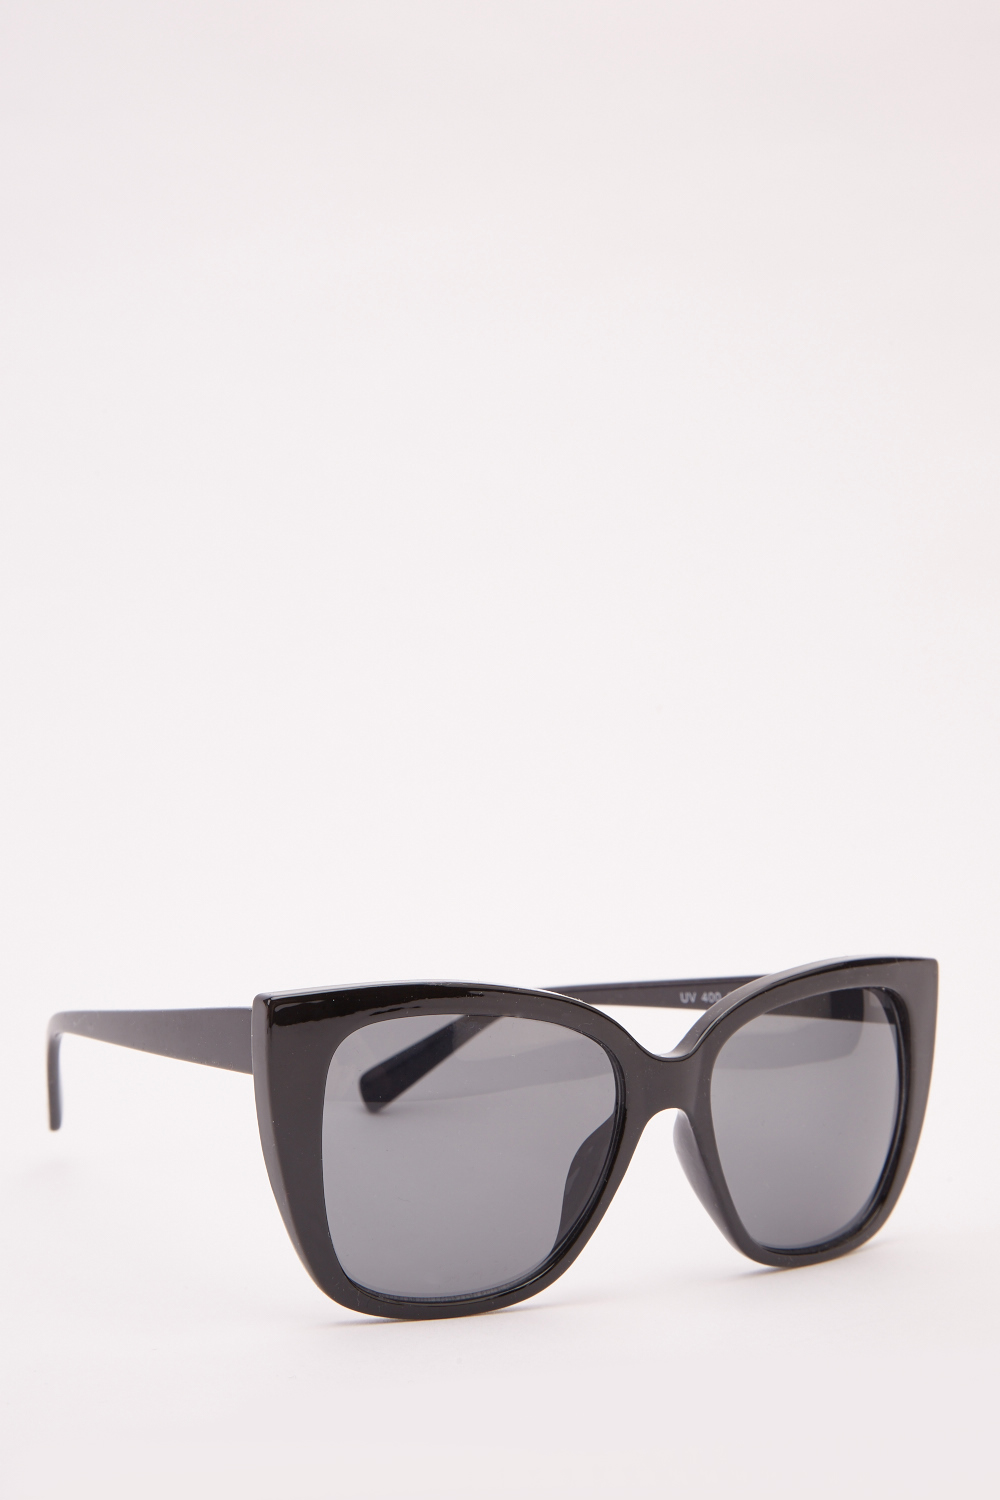 Classic Squared Sunglasses - Just $3